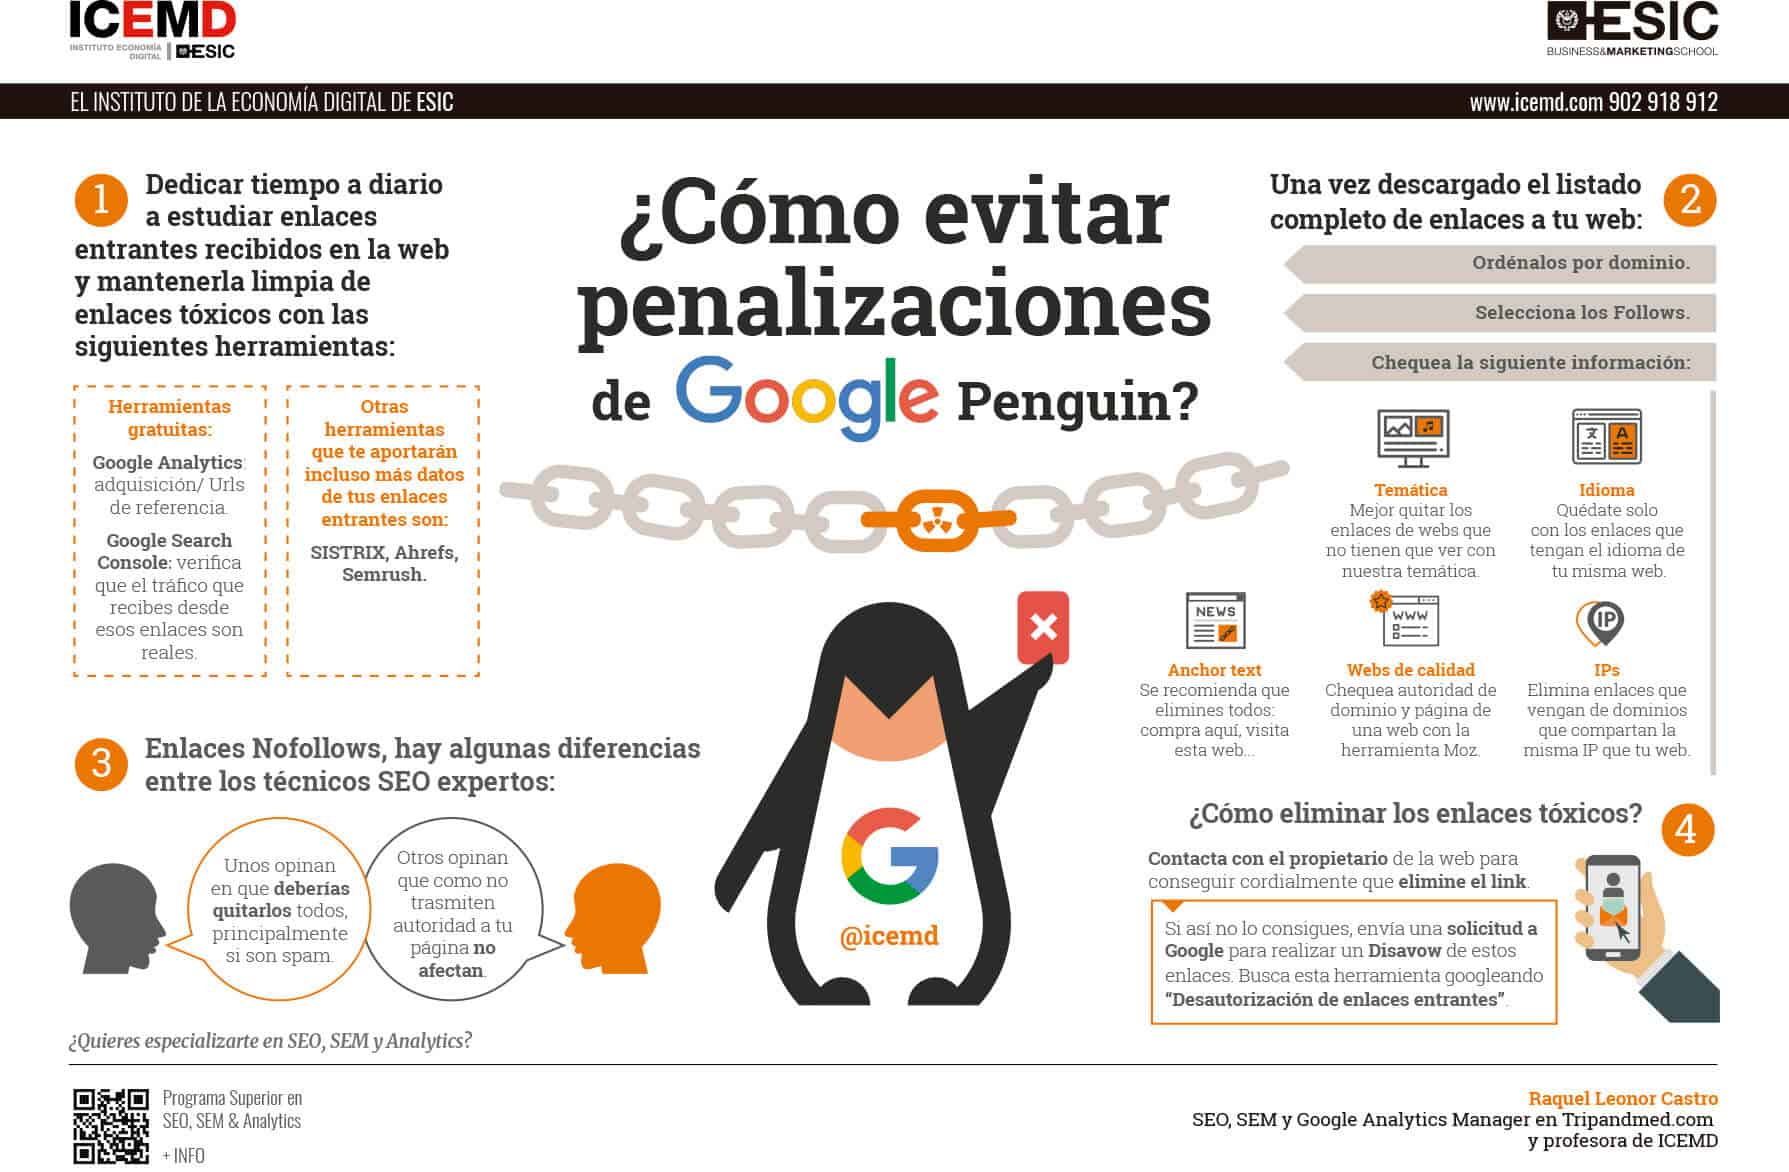 Evita penalizaciones de Google Penguin